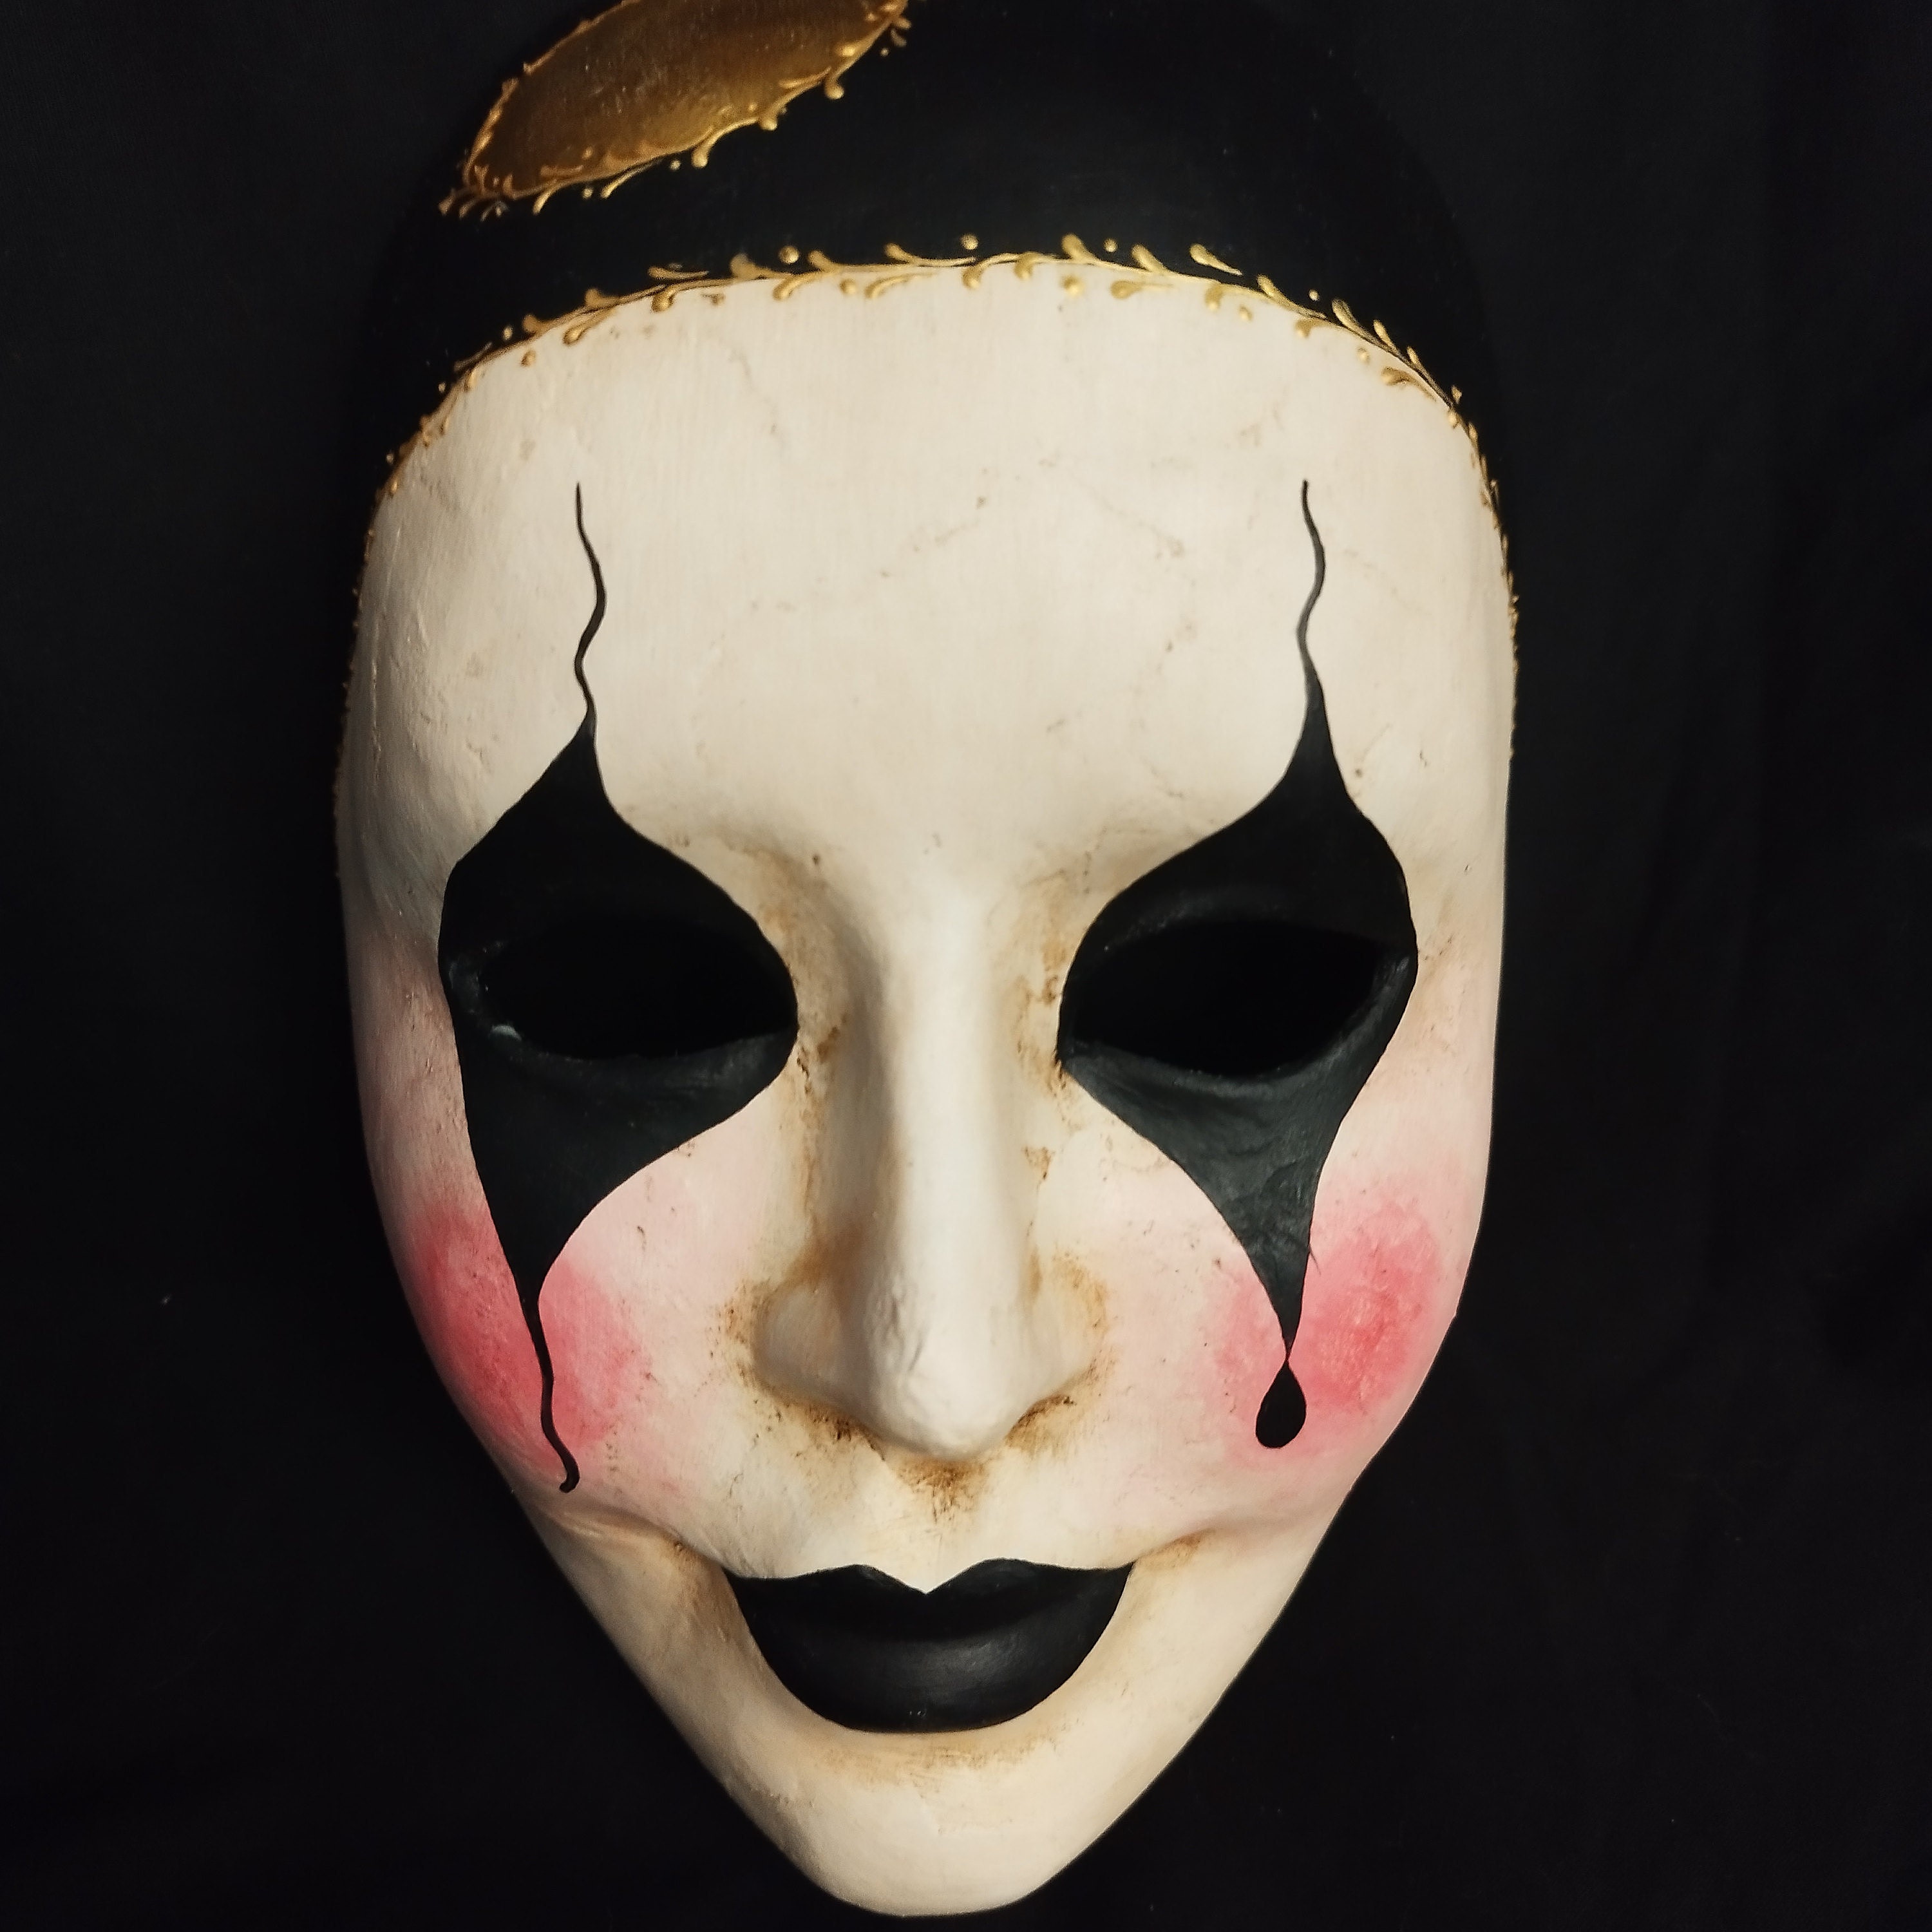 Closeup of a paper mache Venetian mask depicting a